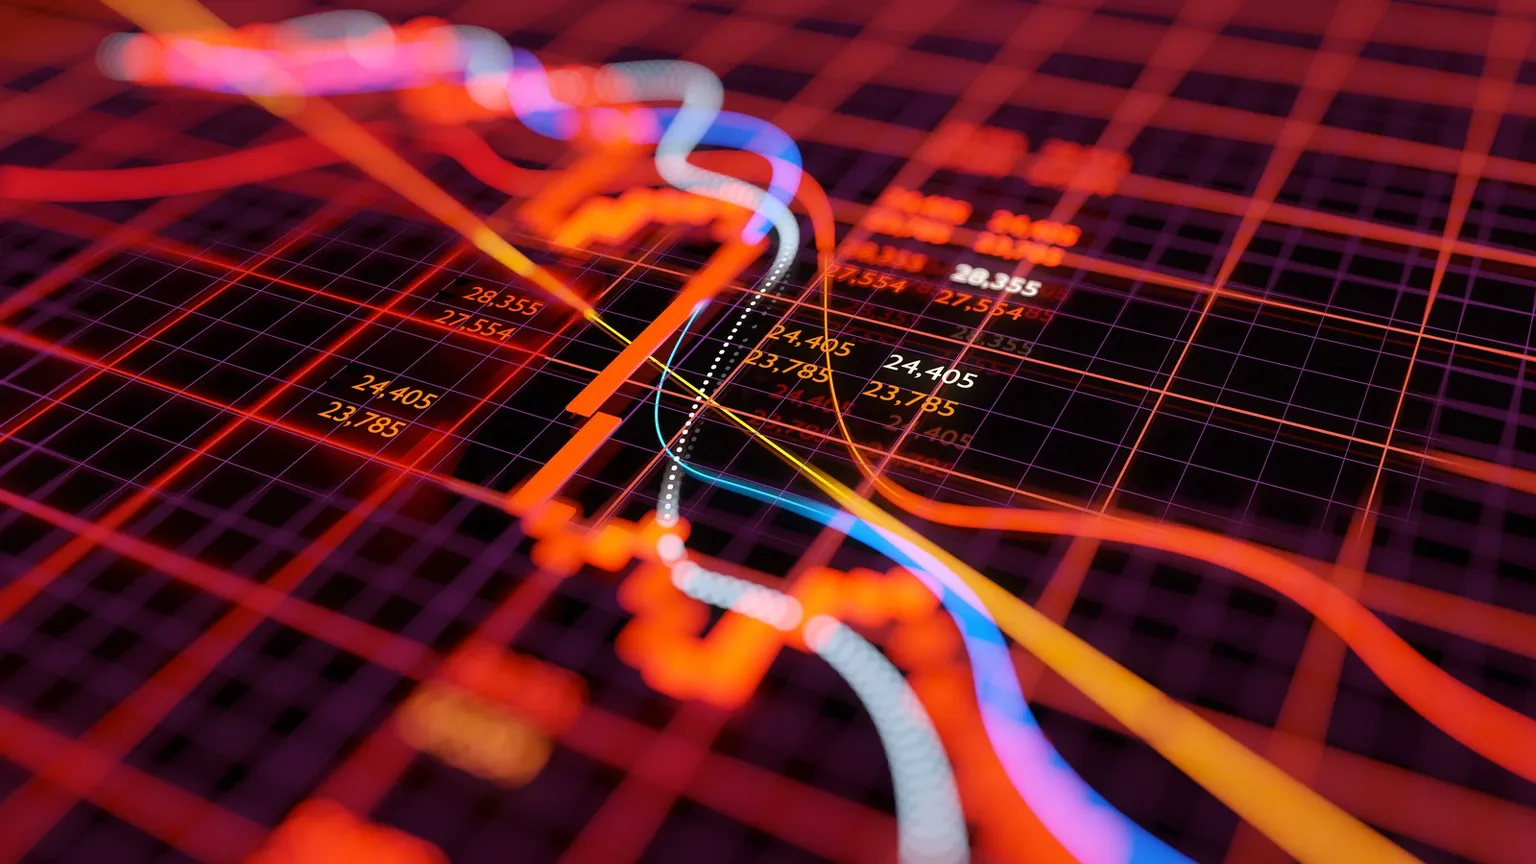 Las criptomonedas son uno de los mercados más volátiles de las finanzas. Imagen: Shutterstock